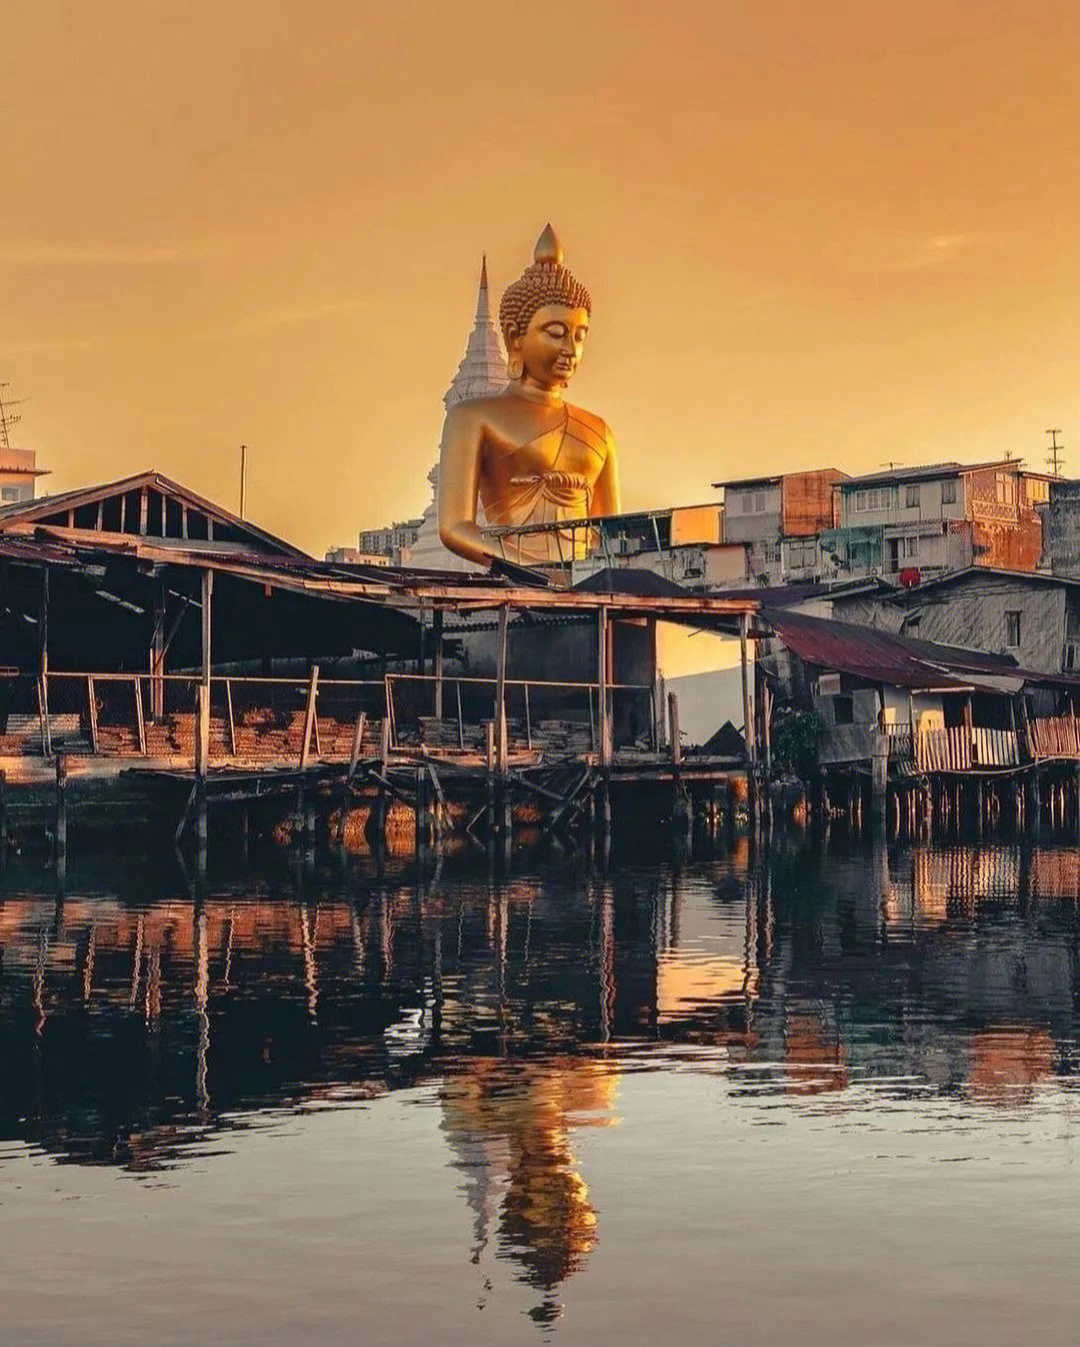 一切皆为风景泰国曼谷白榄寺禅定巨佛